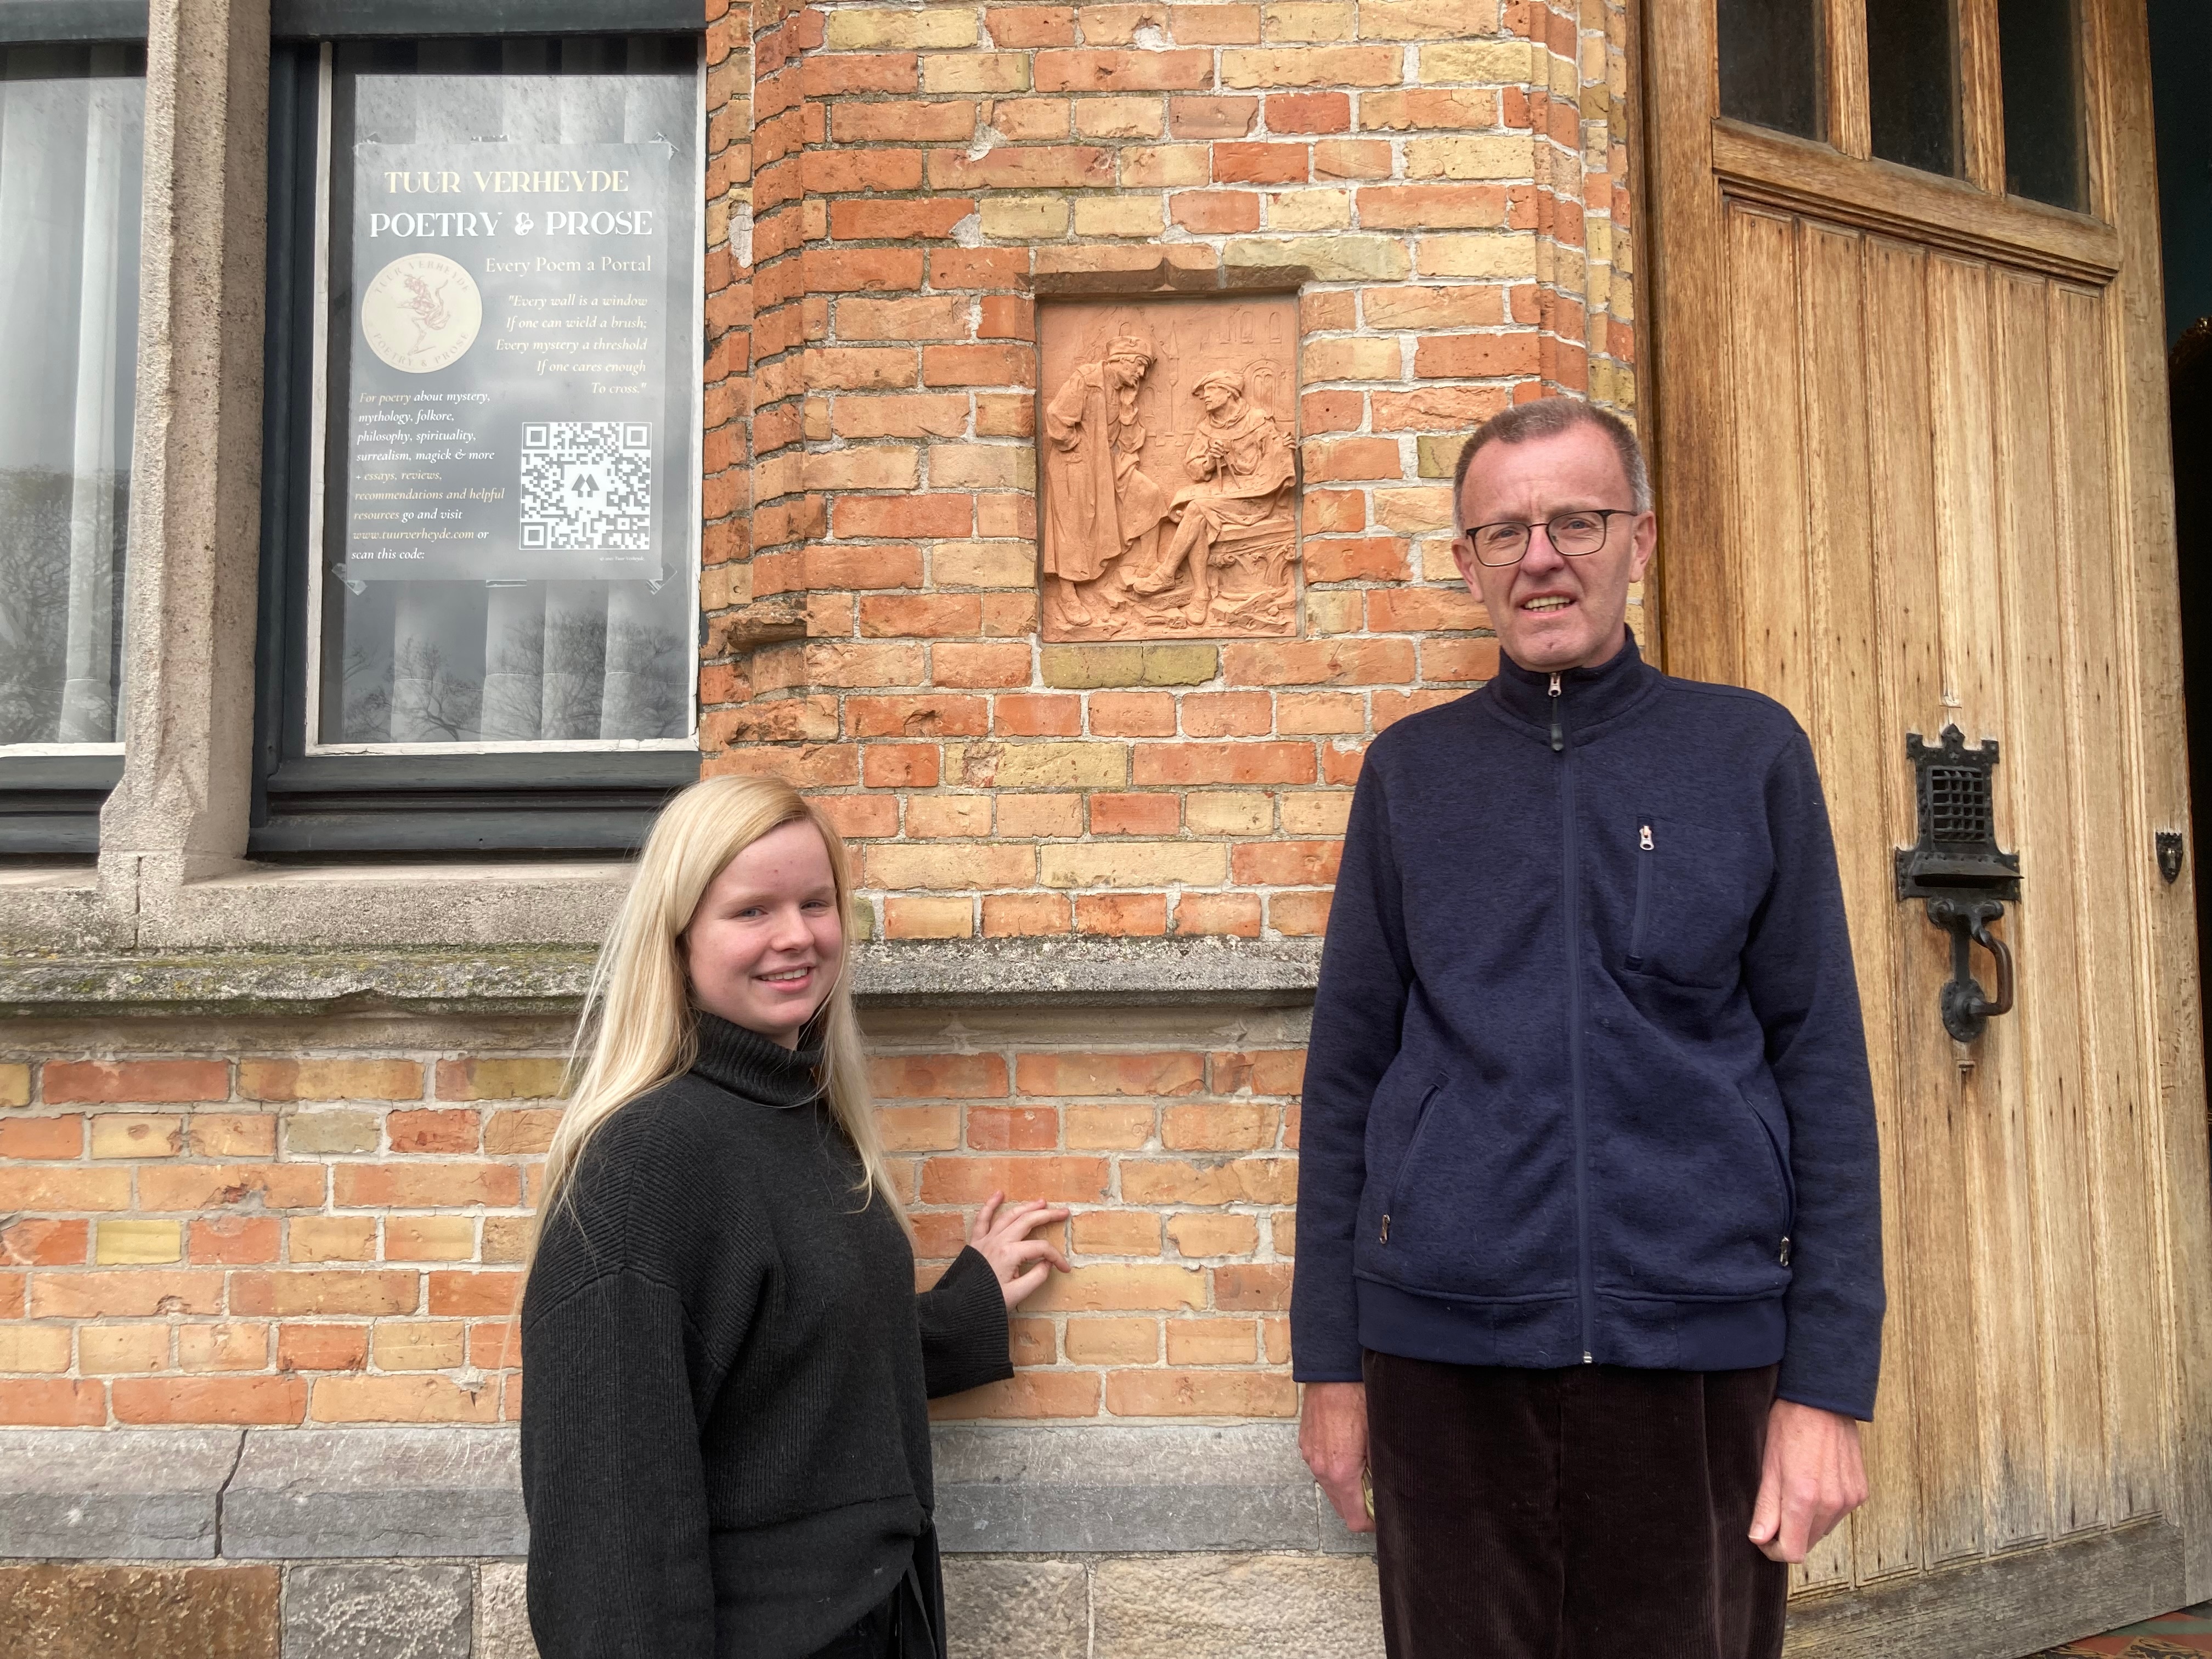 Erwin en Sien Verheyde voor de woning aan het Colaertplein 7 in Ieper. Het terracotta wandpaneel geeft een ‘bouwmeester en leerling-tekenaar’ tafereel weer. 